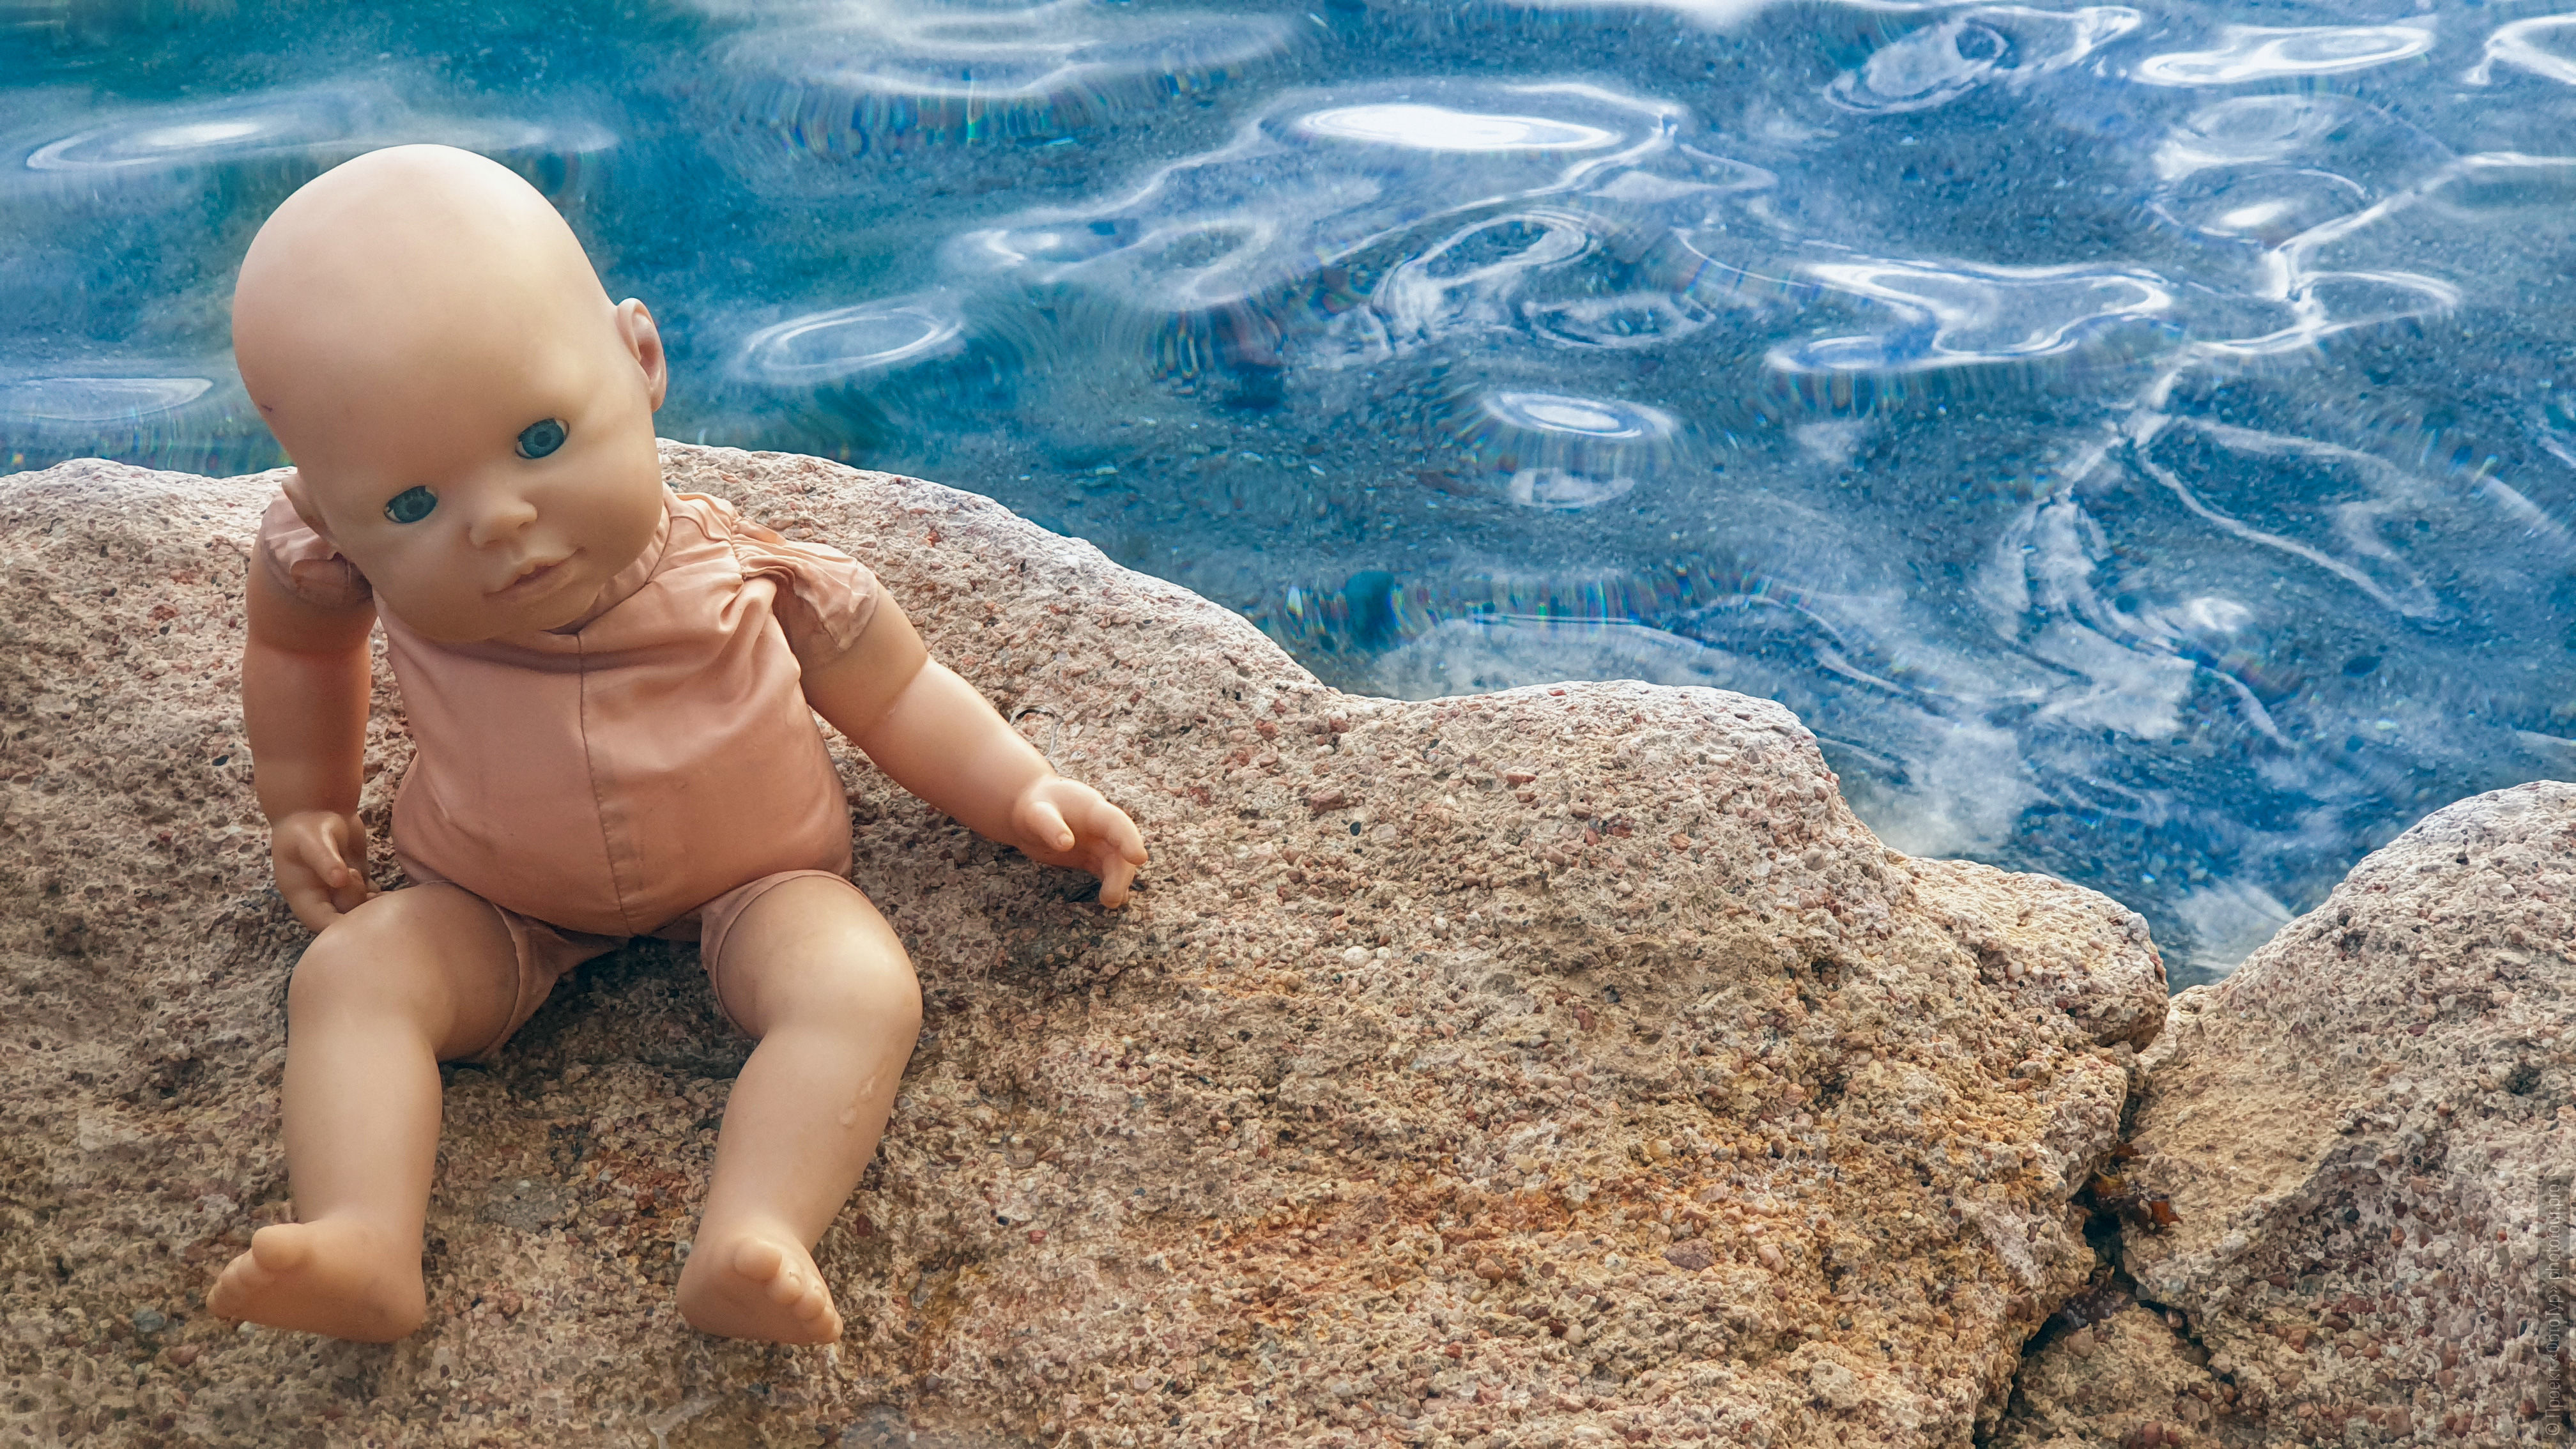 Кукла в отпуске, Дахаб, Синай. Акварельный фототур по Синаю: Красное Море и Цветные Горы,  12 ноября - 19 ноября 2022 года.